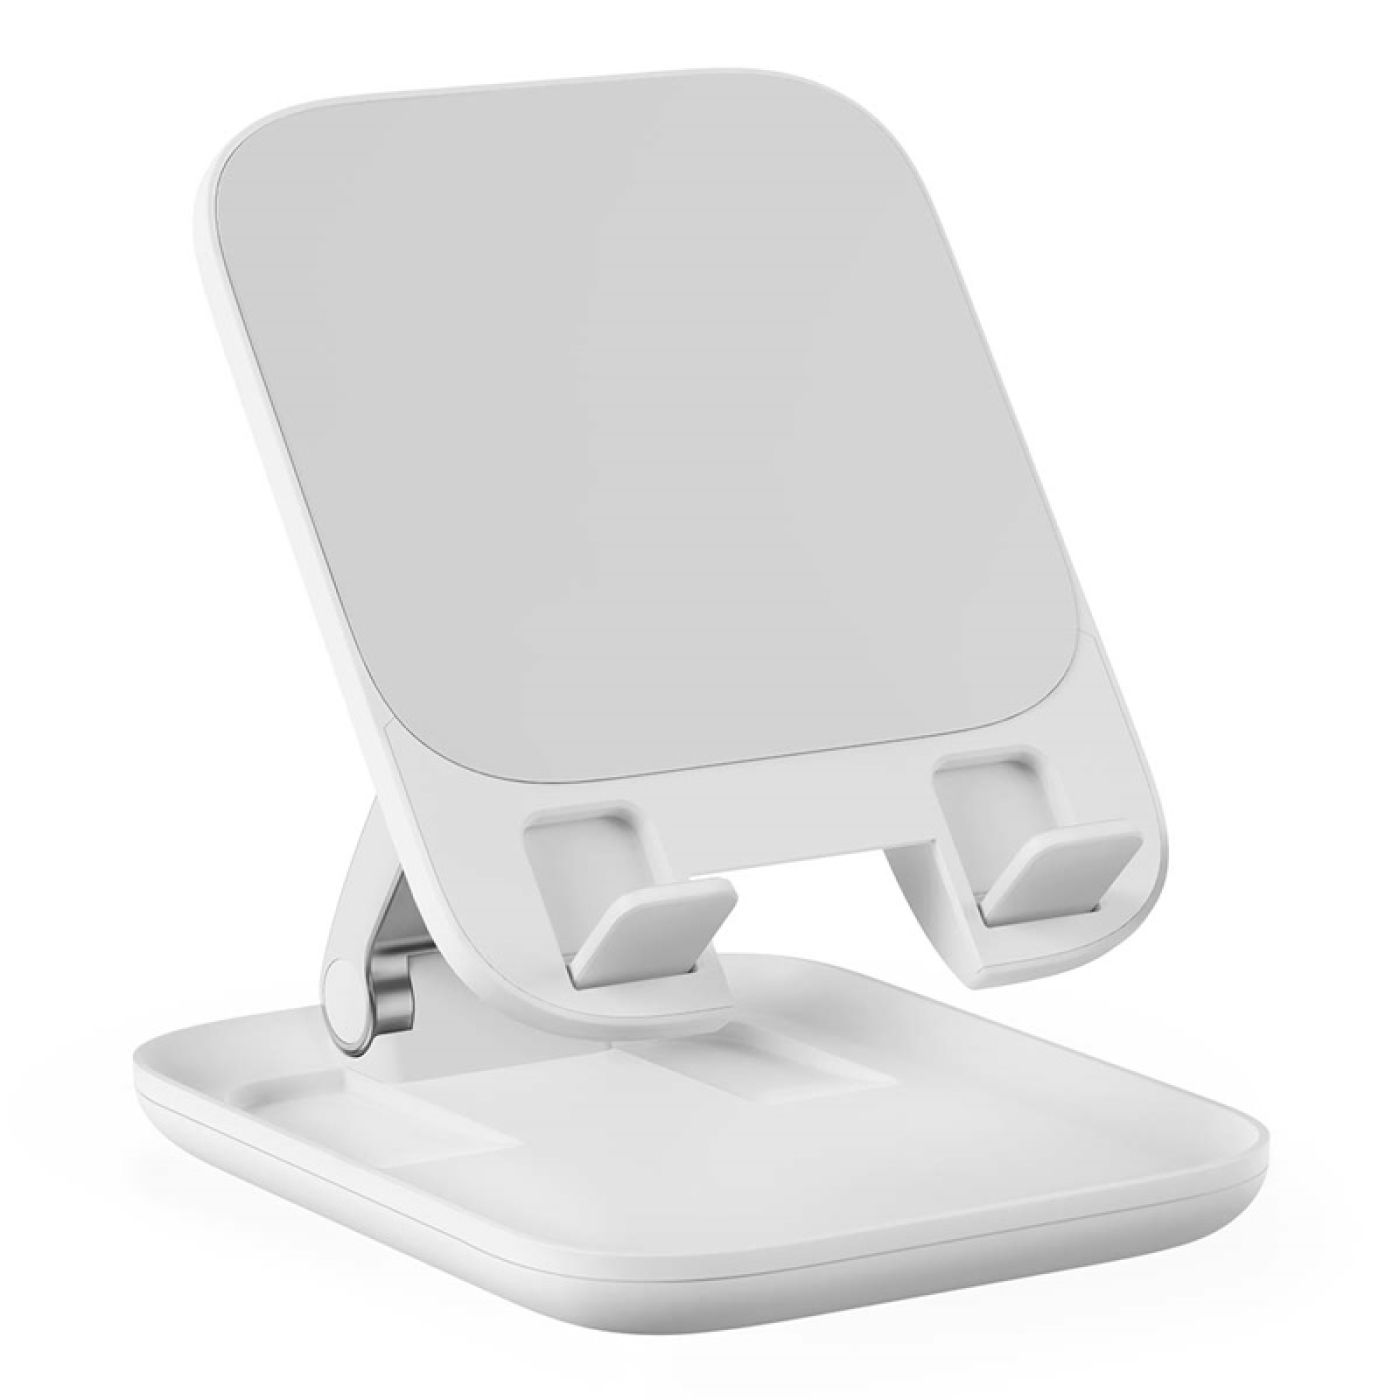 Giá Đỡ Tablet Xếp Gọn Baseus Seashell Series Folding Tablet Stand